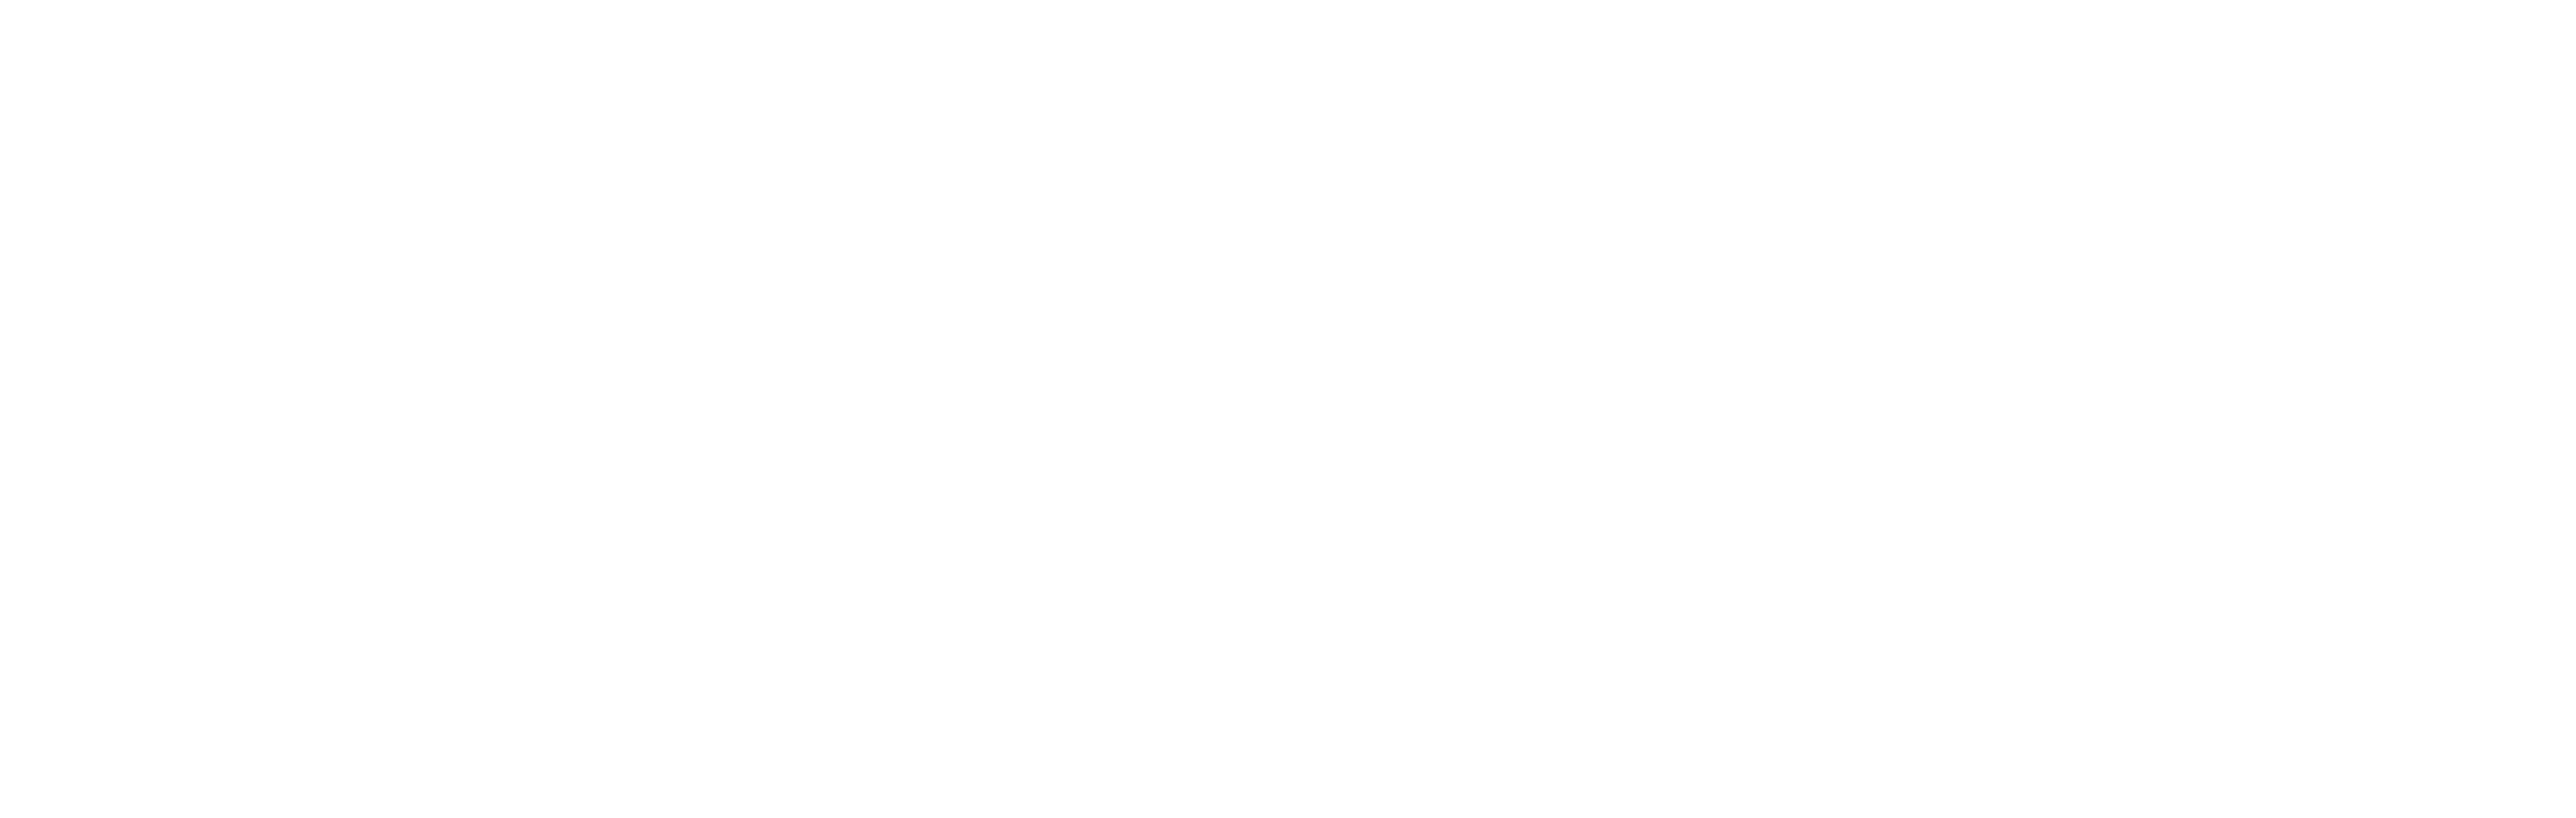 AniCura Vetamic Clínica Veterinària logo